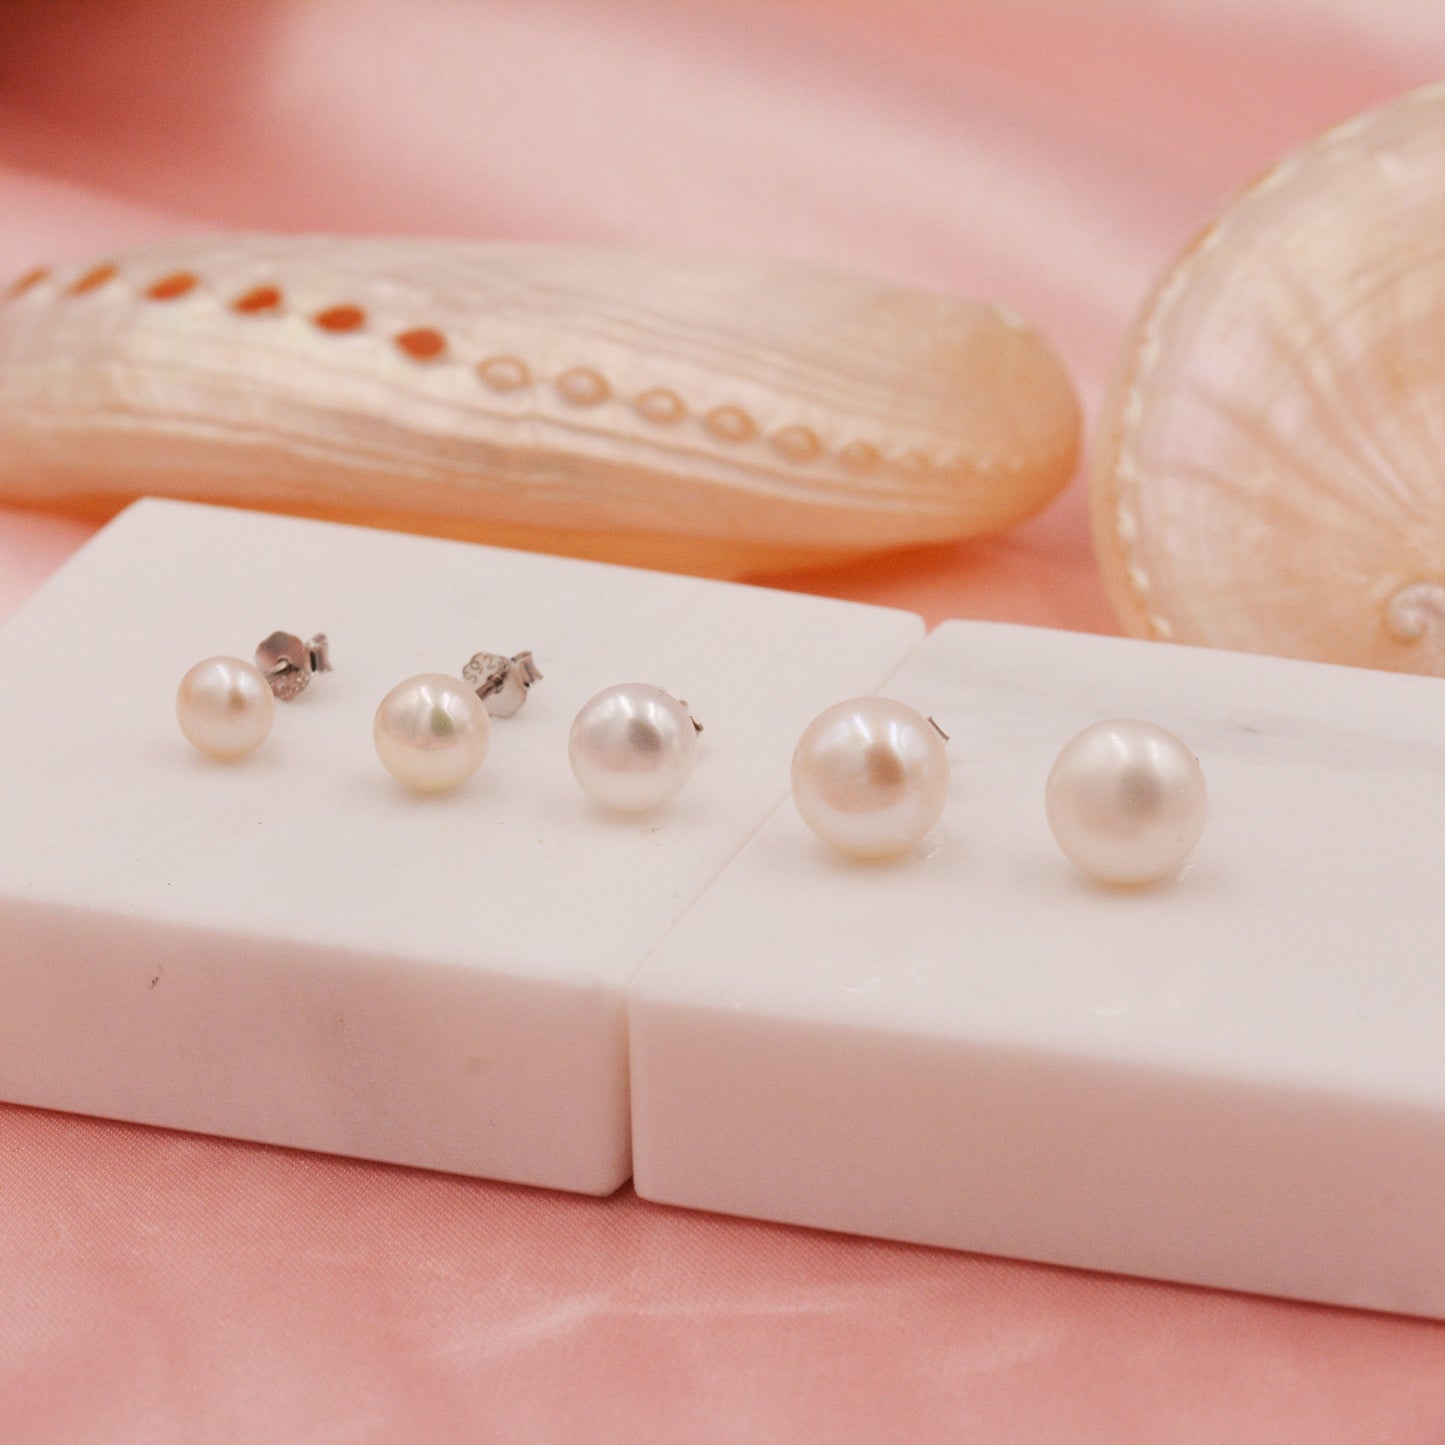 Genuine Pearl Stud Earrings in Sterling Silver, 5mm - 8mm, Small Pearl Stud and Large Pearl Stud, Silver pearl Earrings,